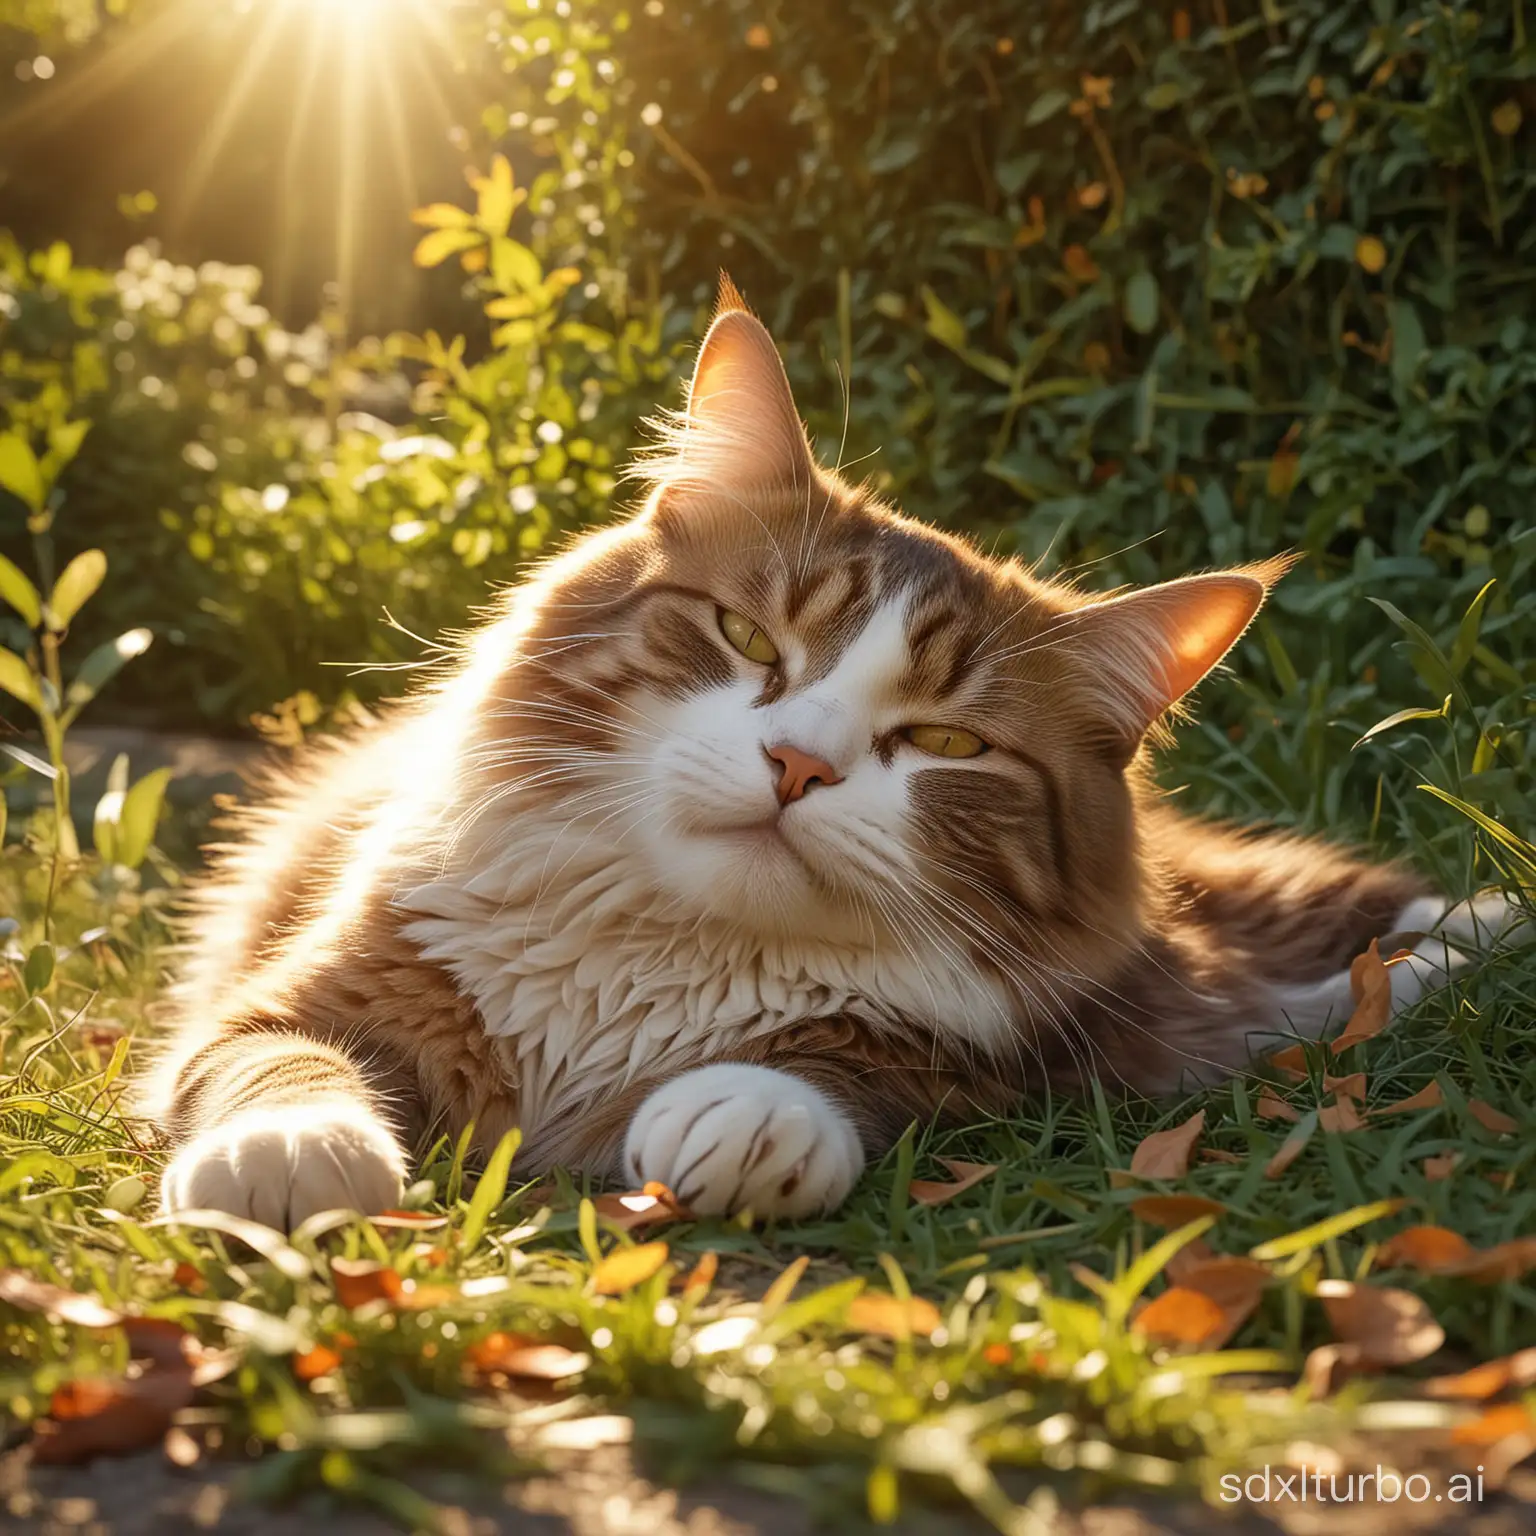 Imaginez un chat domestique, de taille moyenne, avec une fourrure douce et soyeuse. Sa posture est celle d'un sommeil paisible, allongé sur le dos avec ses pattes étendues de manière décontractée. Le chat repose sur un tapis de pelouse verte baignée par la lumière dorée d'un soleil couchant. Les rayons du soleil filtrent à travers les feuilles des arbres voisins, créant des motifs d'ombres et de lumière sur le pelage du chat.

Le visage du chat exprime une profonde tranquillité, avec ses yeux clos et ses moustaches légèrement frémissantes. Sa respiration est calme et régulière. Les détails de son pelage sont méticuleusement représentés, avec des nuances de beige, de crème et de brun qui se mélangent harmonieusement. Des reflets chauds de lumière solaire viennent accentuer les contours de son corps, créant une atmosphère chaleureuse et apaisante.

Autour du chat, on peut distinguer quelques éléments supplémentaires typiques d'un jardin, comme des fleurs colorées en arrière-plan, des feuilles tombées parsemant le sol et peut-être un papillon voletant près de lui. L'environnement est empreint de cette ambiance magique propre aux films Disney, où chaque détail est soigneusement conçu pour évoquer la beauté de la nature et la douceur de la vie domestique.

L'ensemble de l'image dégage une sensation de quiétude et de bonheur, capturant l'instant magique où un chat s'abandonne au plaisir simple de se reposer au soleil. Le style artistique est fidèle à celui des animations Disney, avec des lignes douces, des couleurs vibrantes et une attention particulière portée aux expressions et aux émotions des personnages. Chaque élément de l'image contribue à créer une scène immersive et captivante, invitant le spectateur à se perdre dans ce moment de pur enchantement.